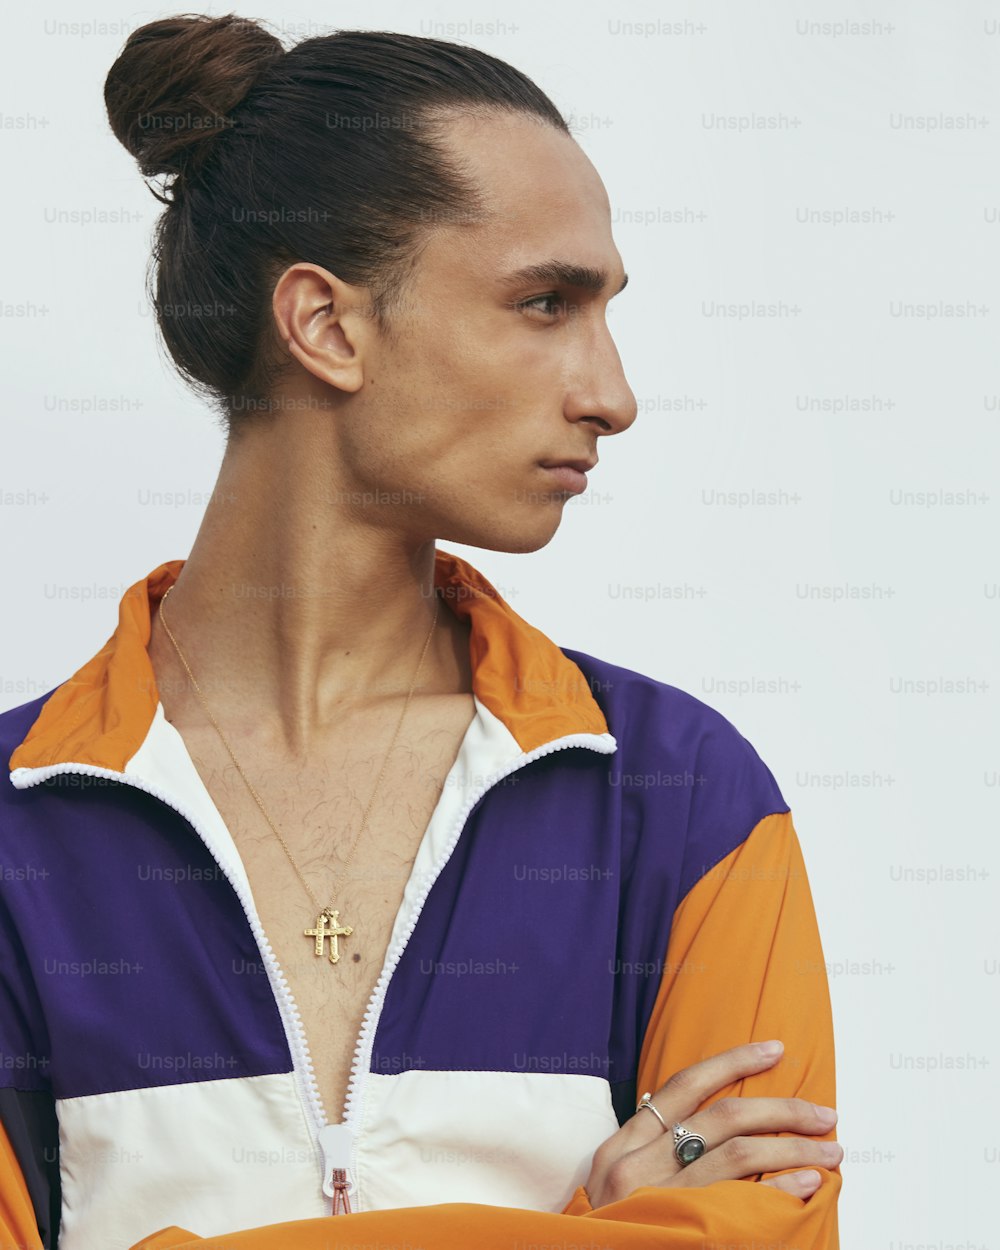 Un homme les bras croisés portant une veste orange et violette